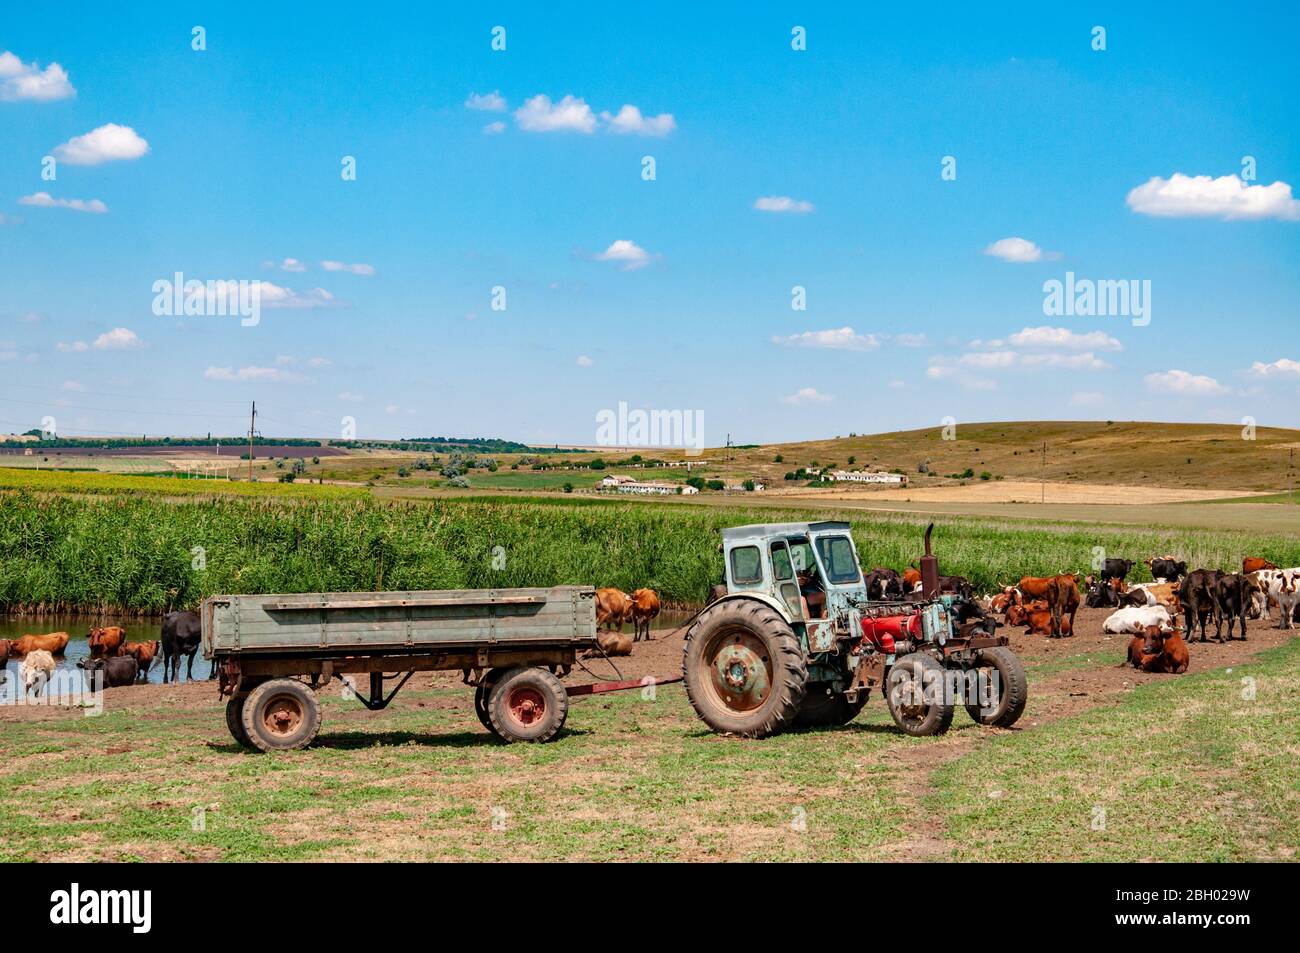 Ländliche Landschaft von landwirtschaftlichen Feld mit veralteten Traktor und Herde von Kühen in der Nähe von Fluss. Ruhige Sommerlandschaft in der Landschaft der Ukraine. Stockfoto